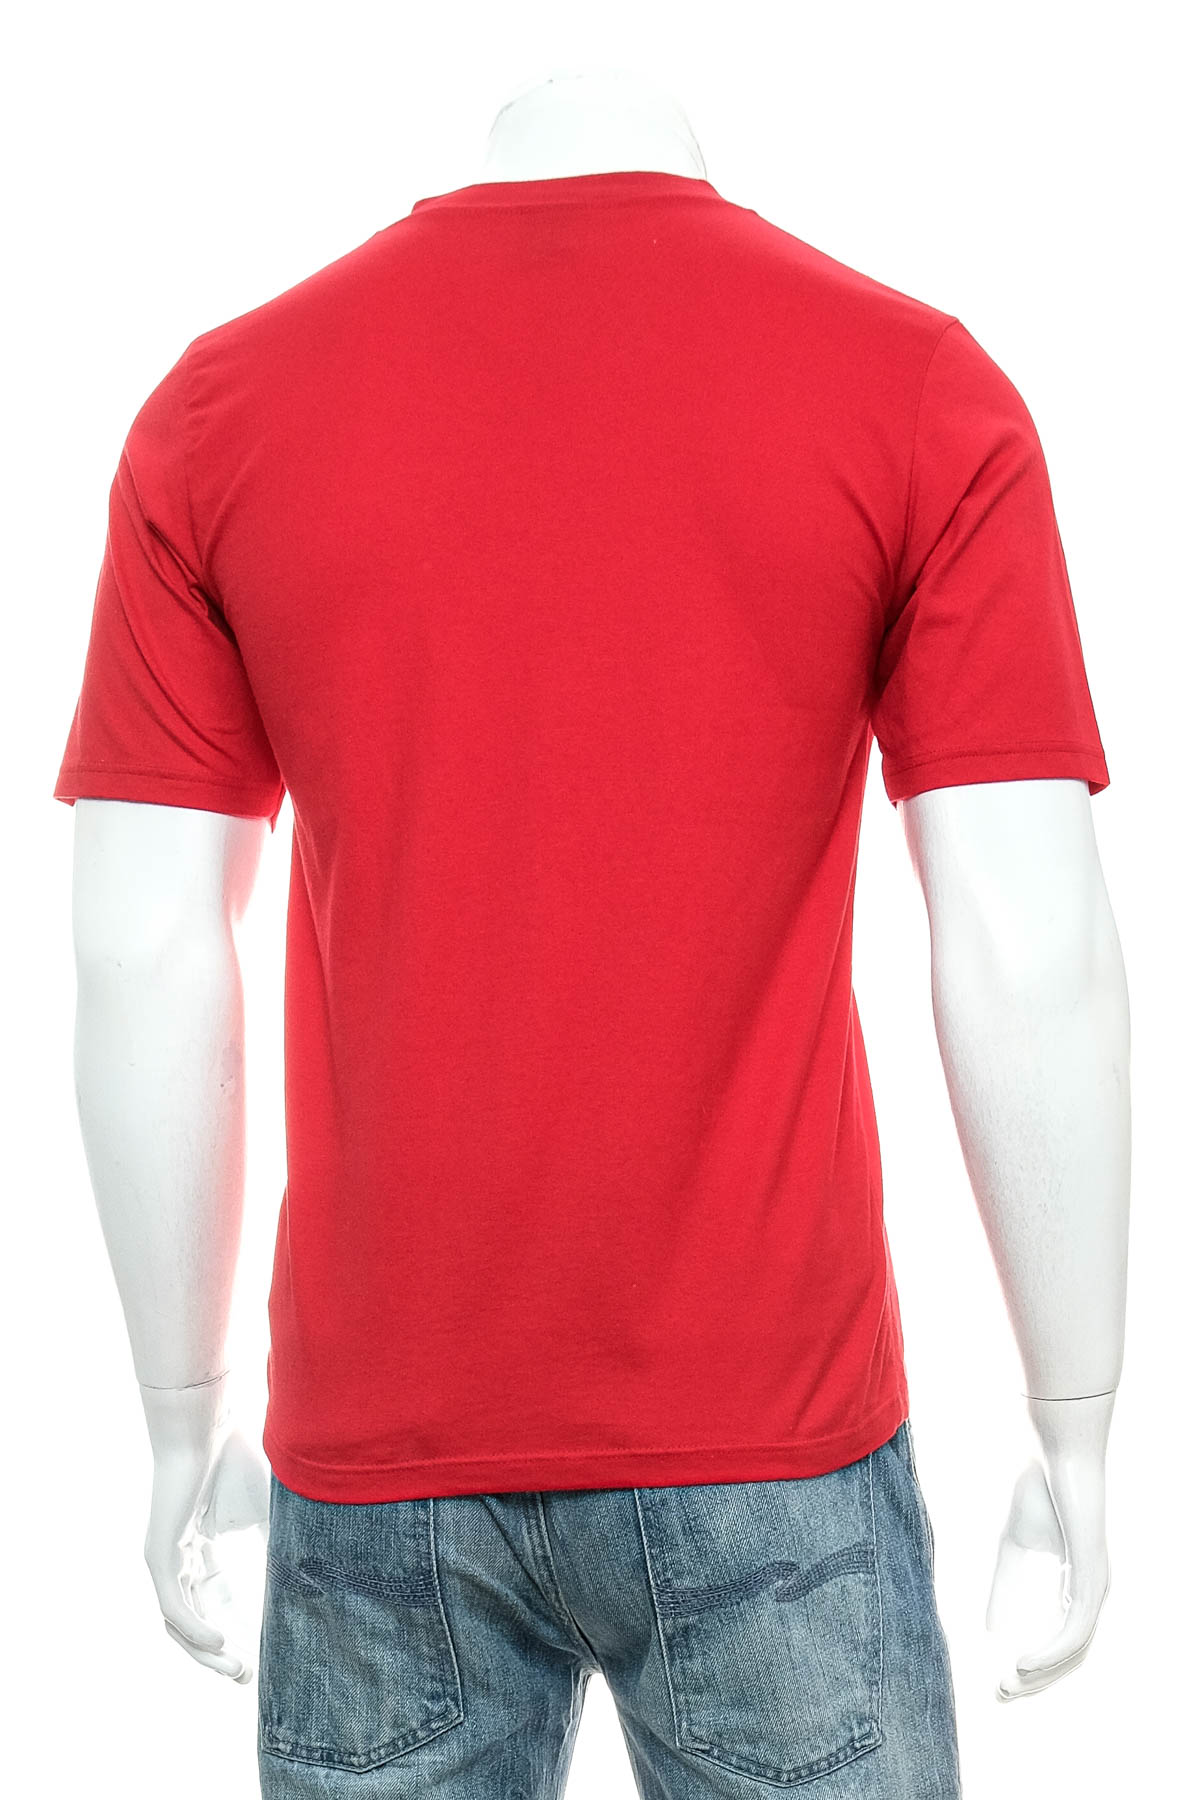 Αντρική μπλούζα - Trigema - 1